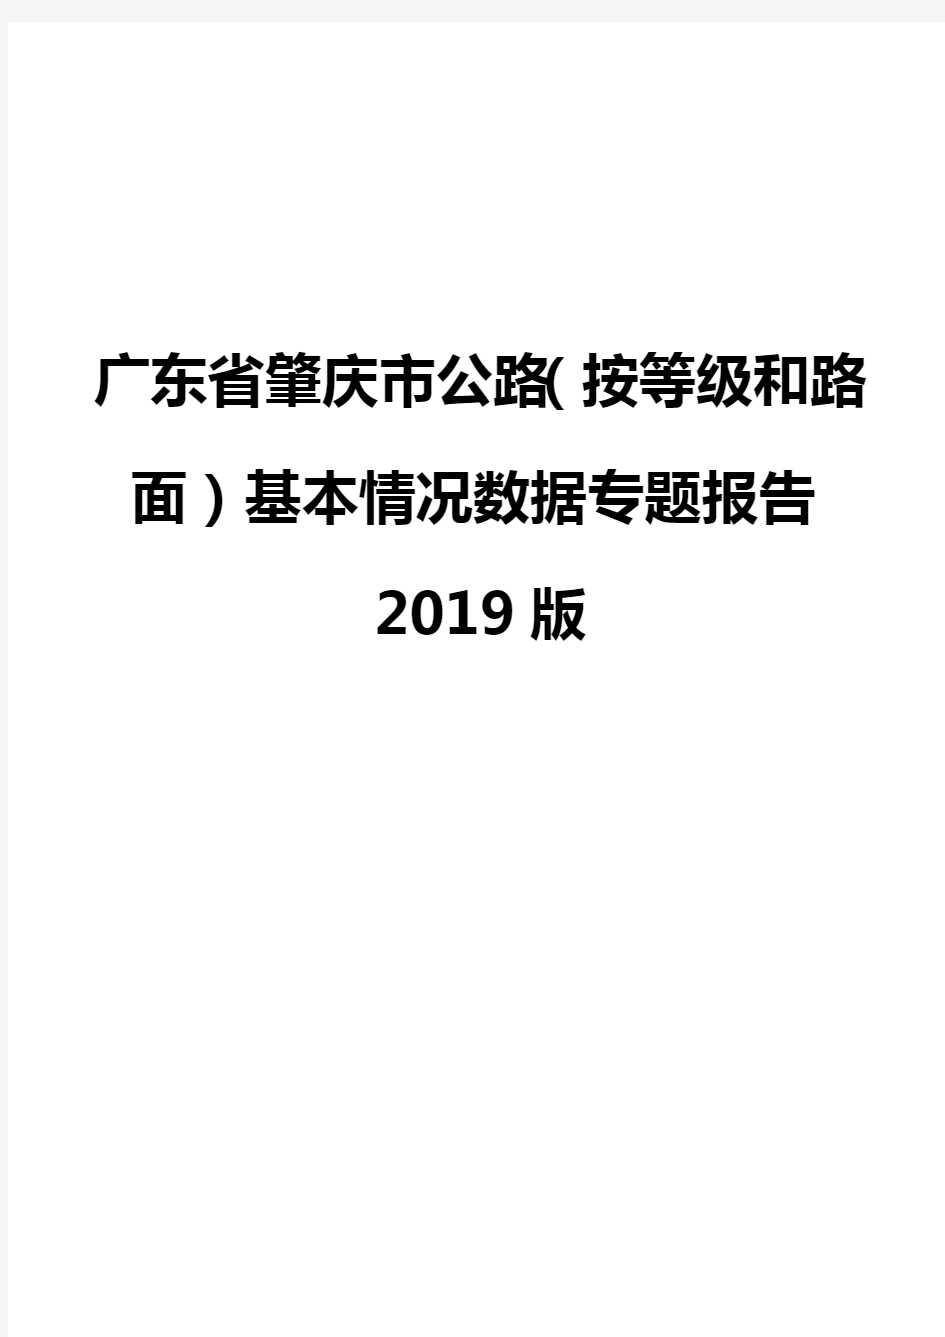 广东省肇庆市公路(按等级和路面)基本情况数据专题报告2019版